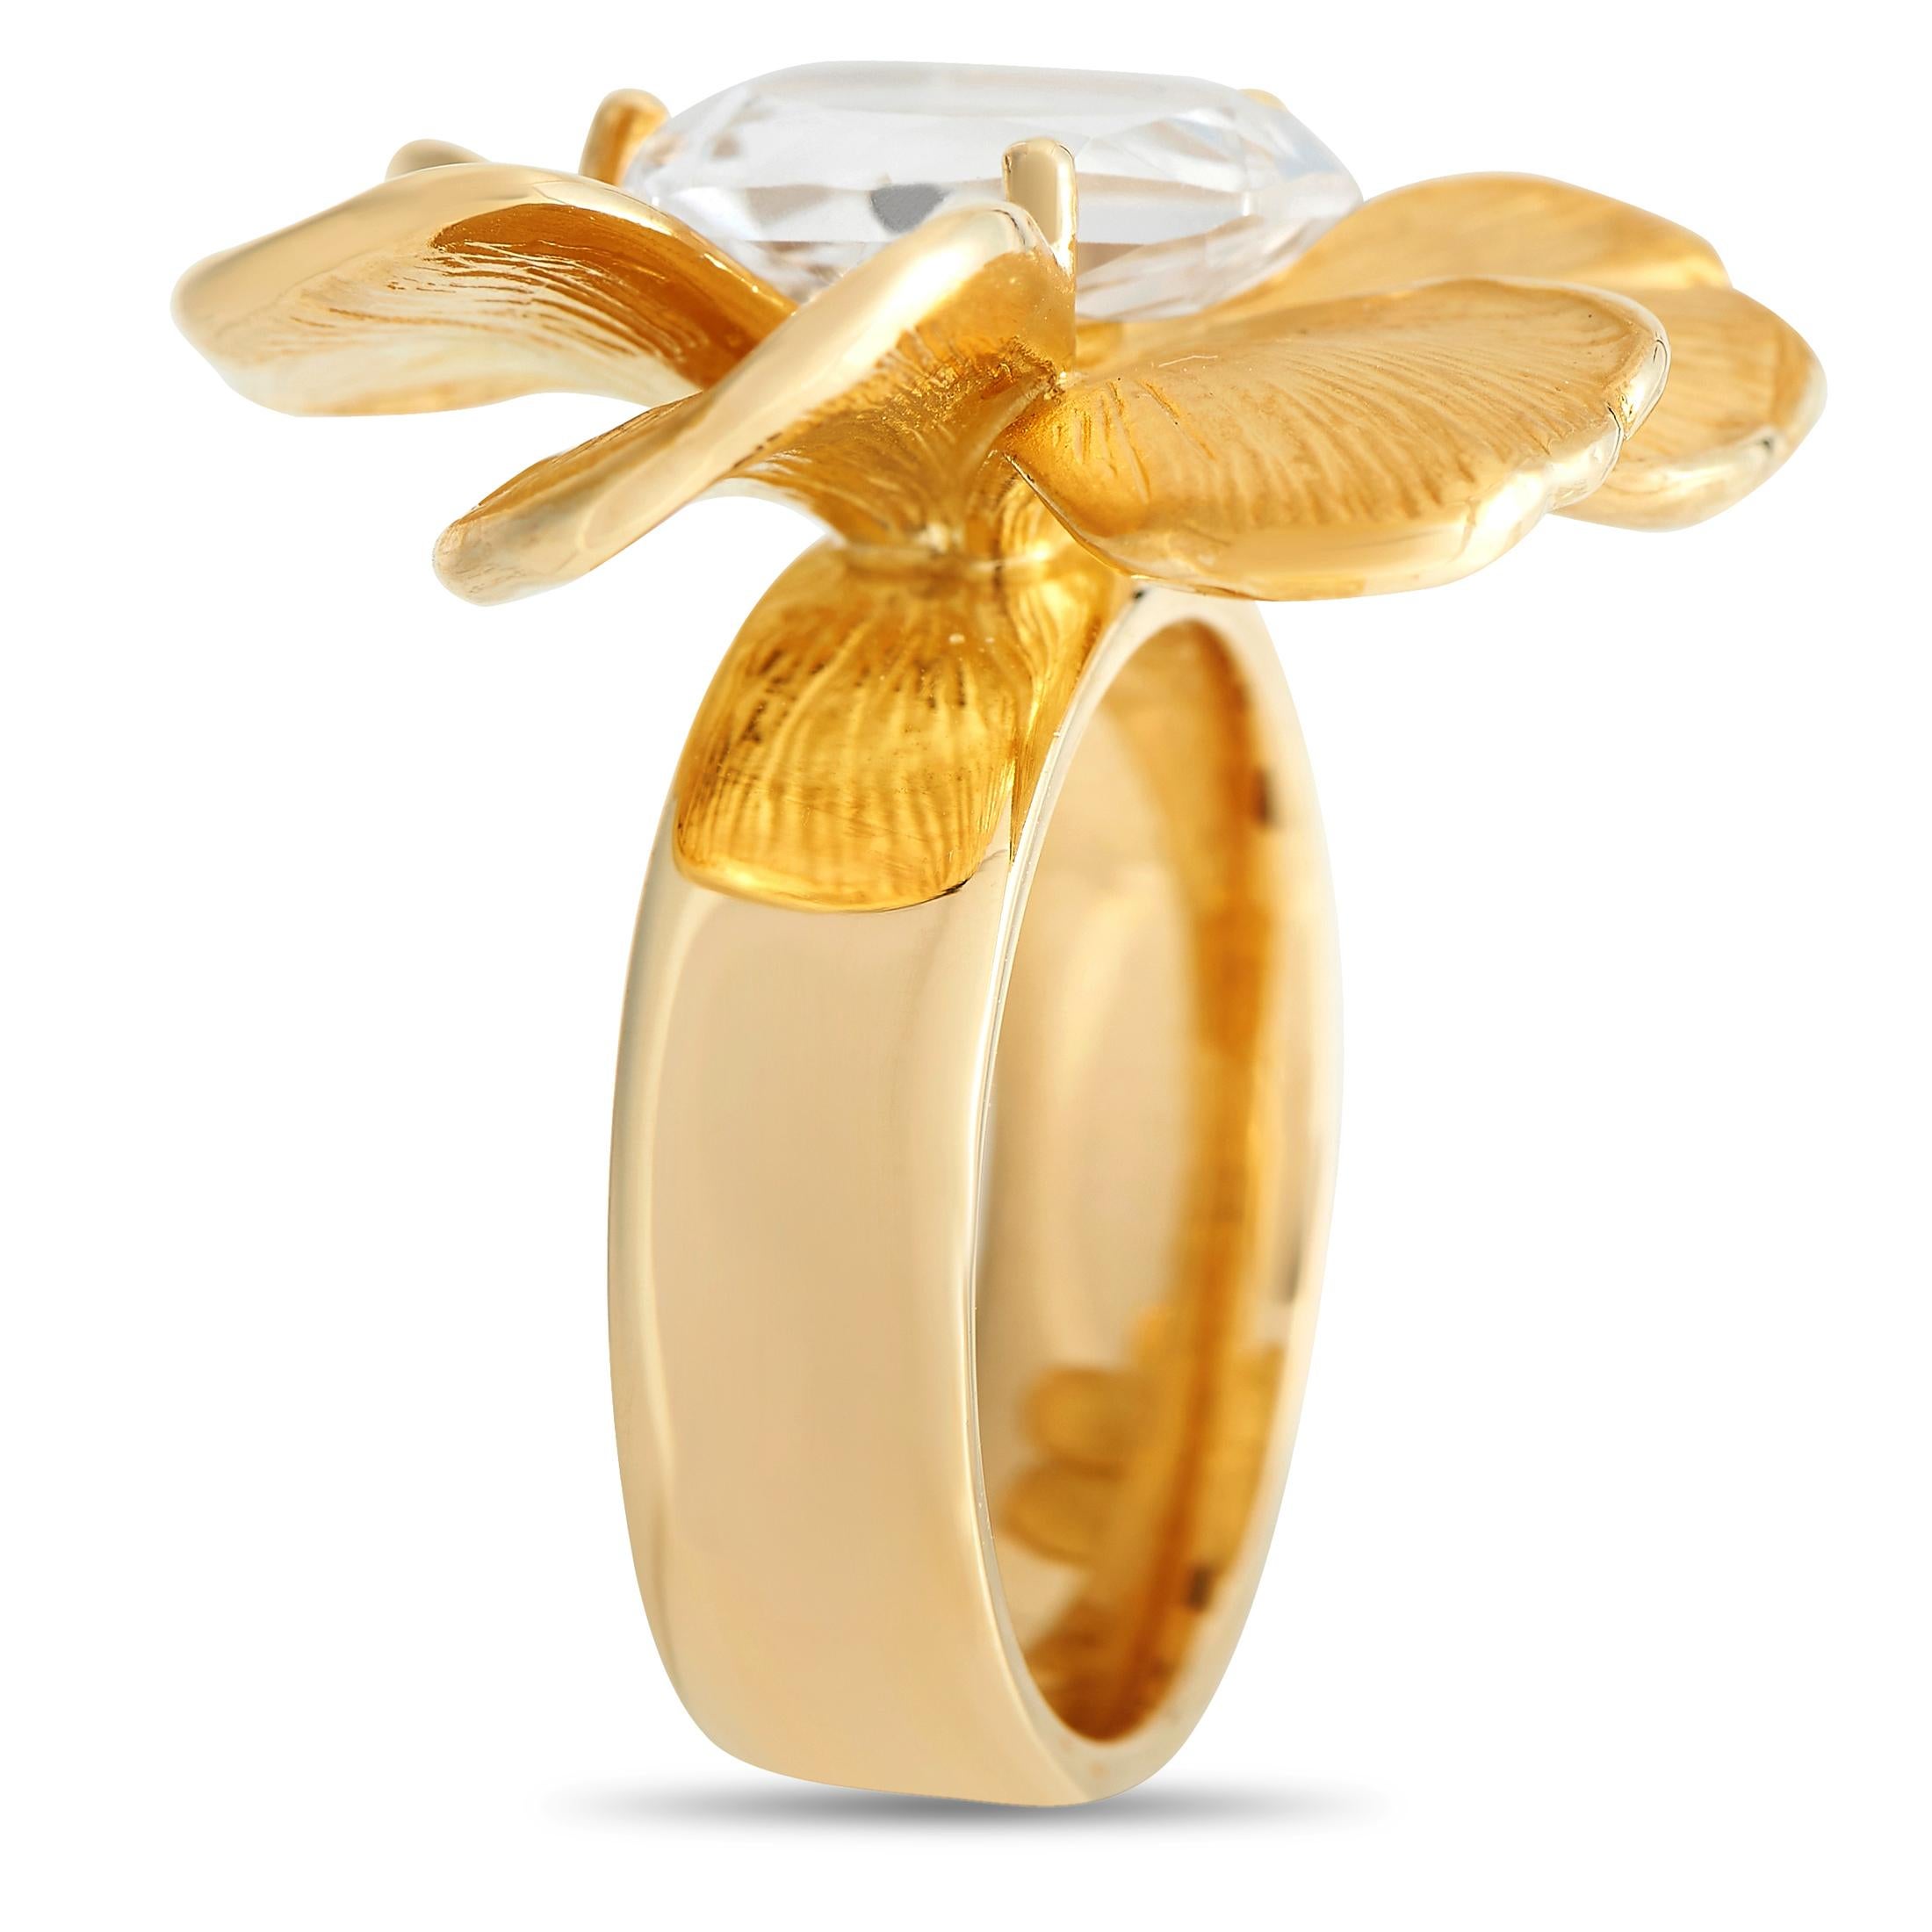 Cette bague en or jaune 18 carats, issue de la Collection S de Carrera y Carrera, est d'un glamour sculptural. Le bracelet de 5 mm d'épaisseur en finition polie est surmonté d'une pièce centrale florale composée de six pétales texturés aux bords